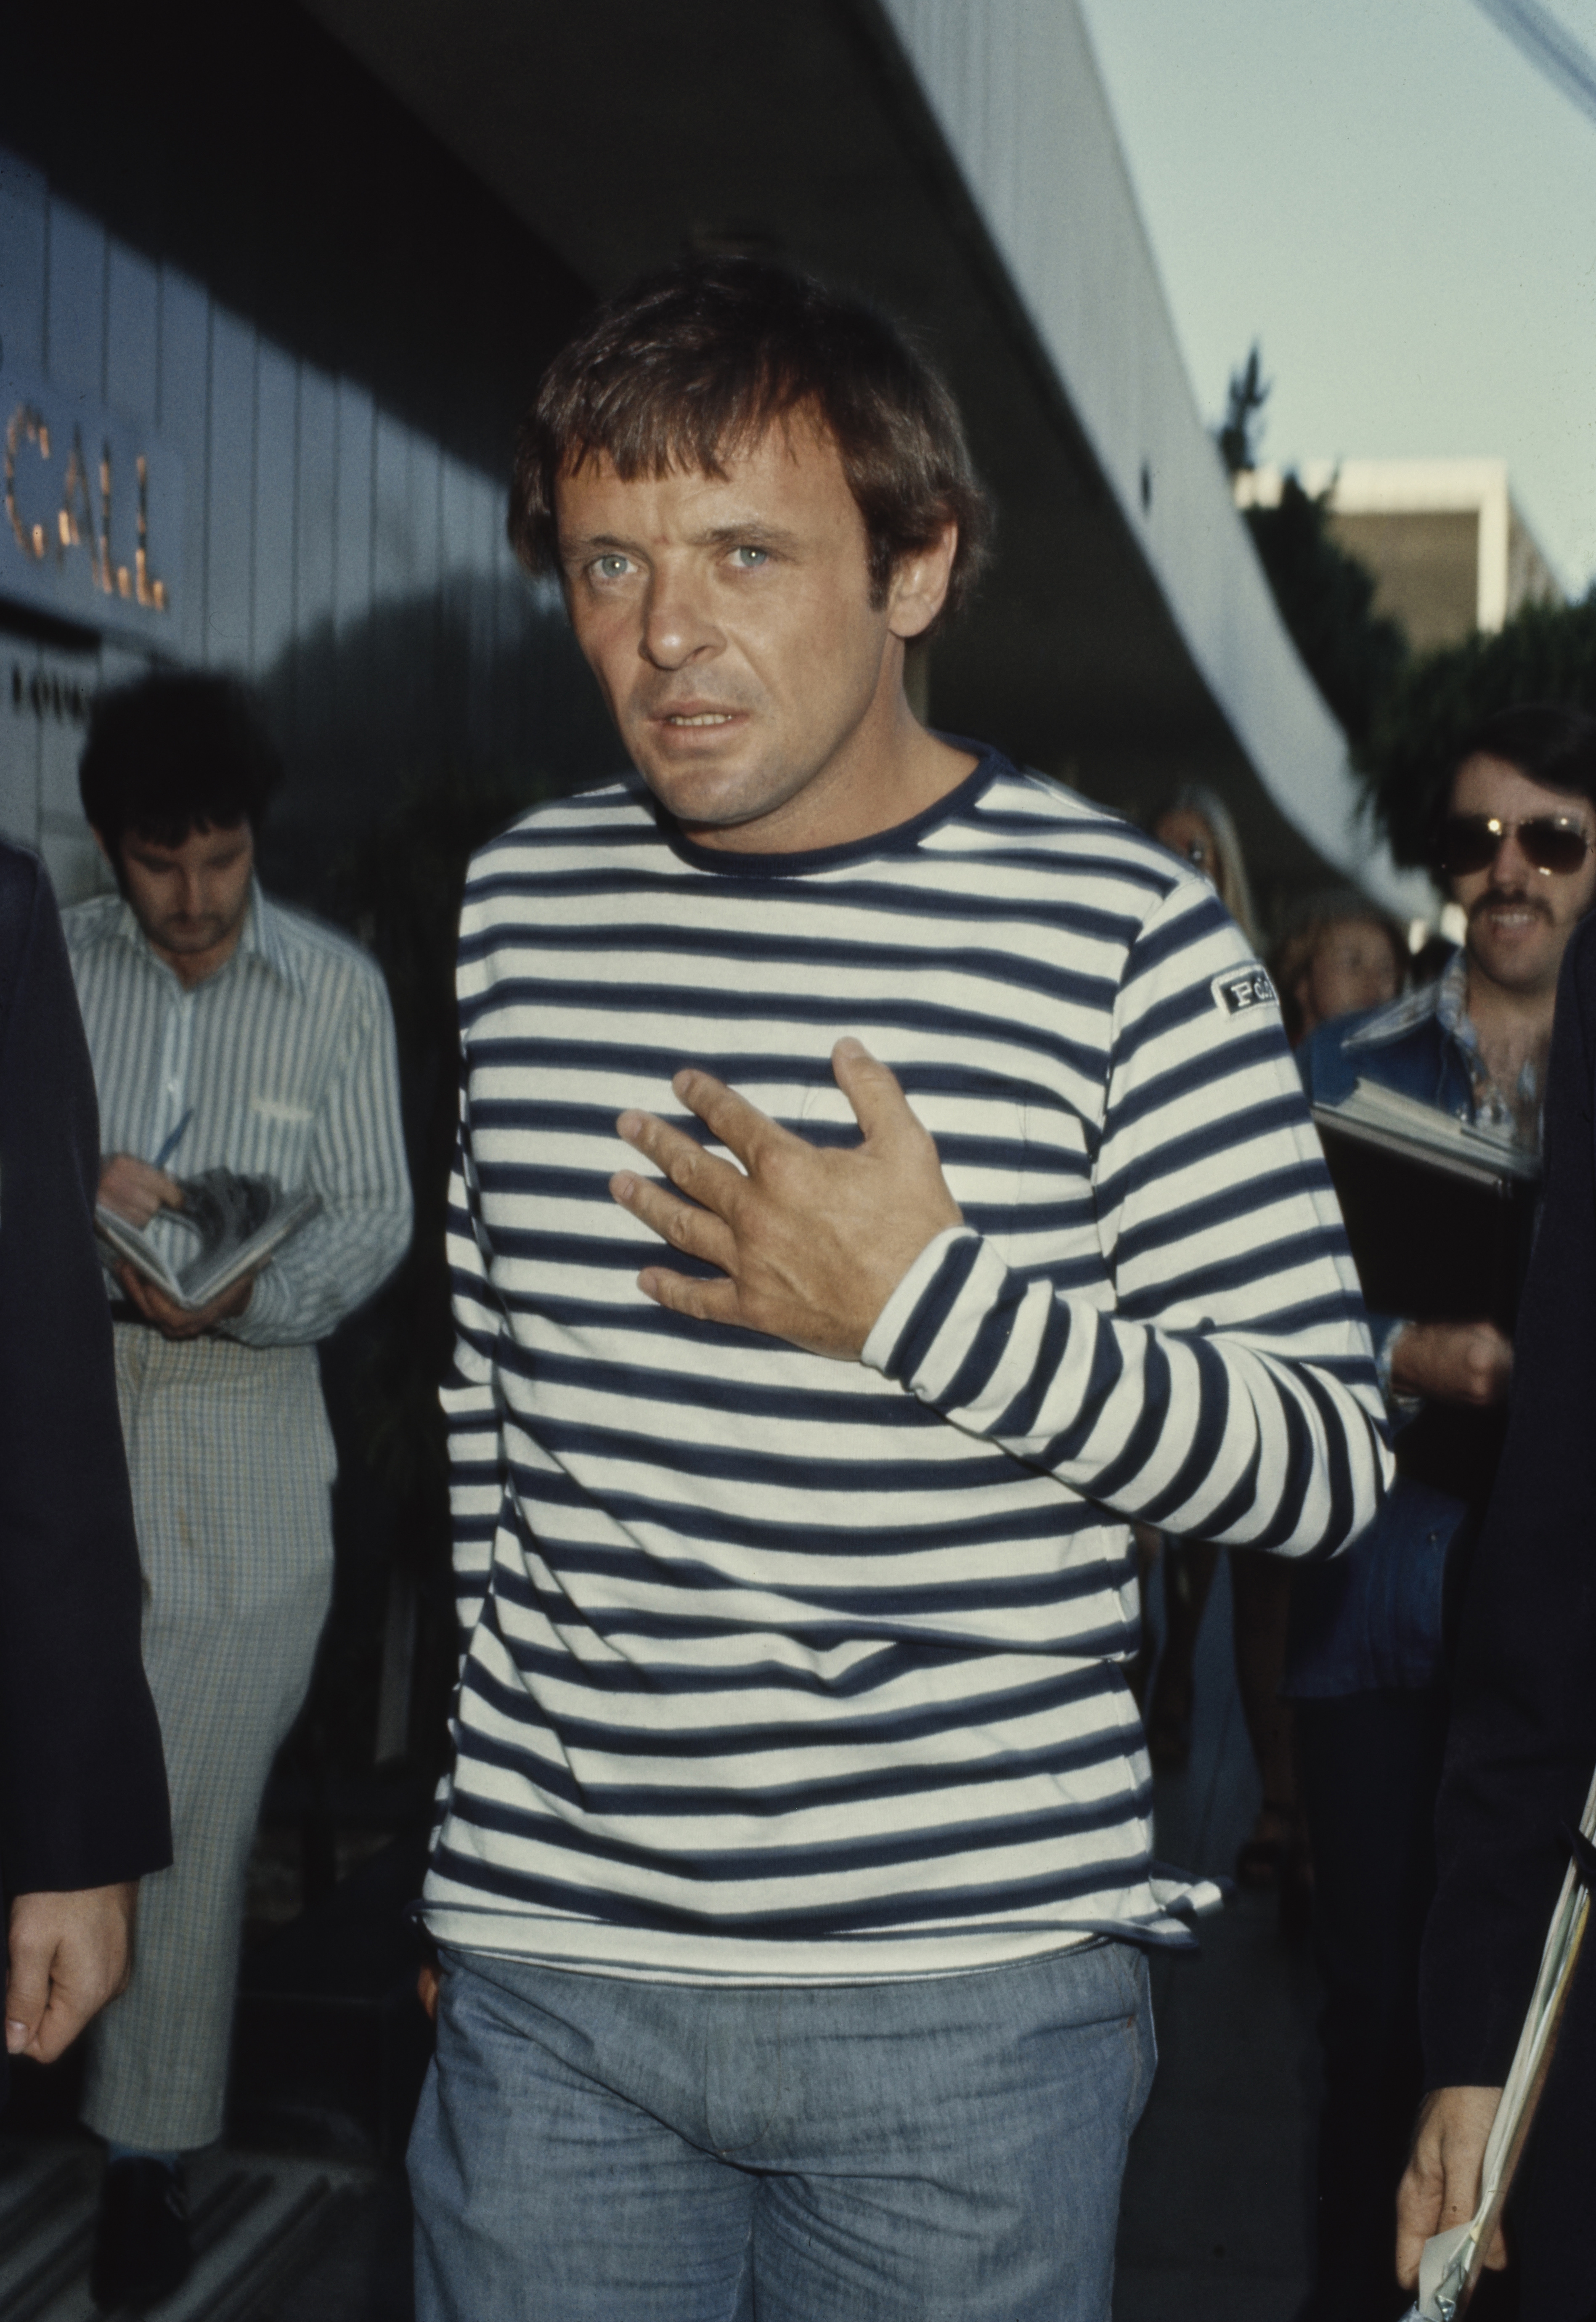 Der Schauspieler bei der Ankunft im Pavilion Restaurant in den Vereinigten Staaten, etwa in den 1970er Jahren. | Quelle: Getty Images